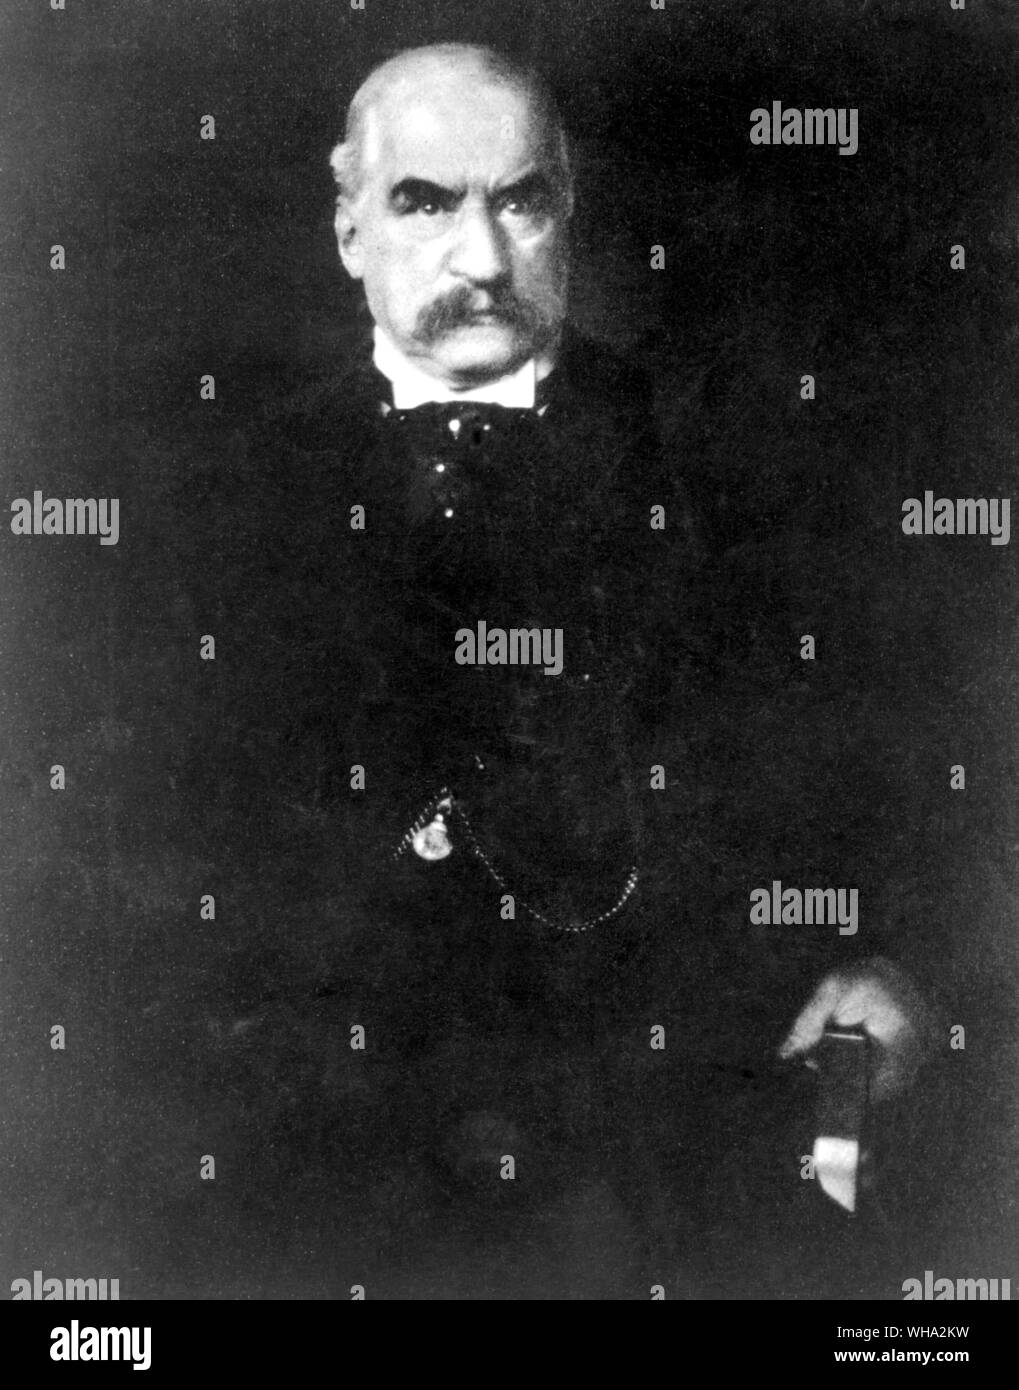 John Pierpont Morgan (17. April 1837 - 1913) - Der Steichen kamera Portrait. John Pierpont Morgan. John Pierpont Morgan, Sr. (J. S. Morgan) US-Geschäftsmann, Finanzier, und Stahl Industrielle; Mitbegründer von U.S. Steel Corp. 1901 1837-1913 Stockfoto